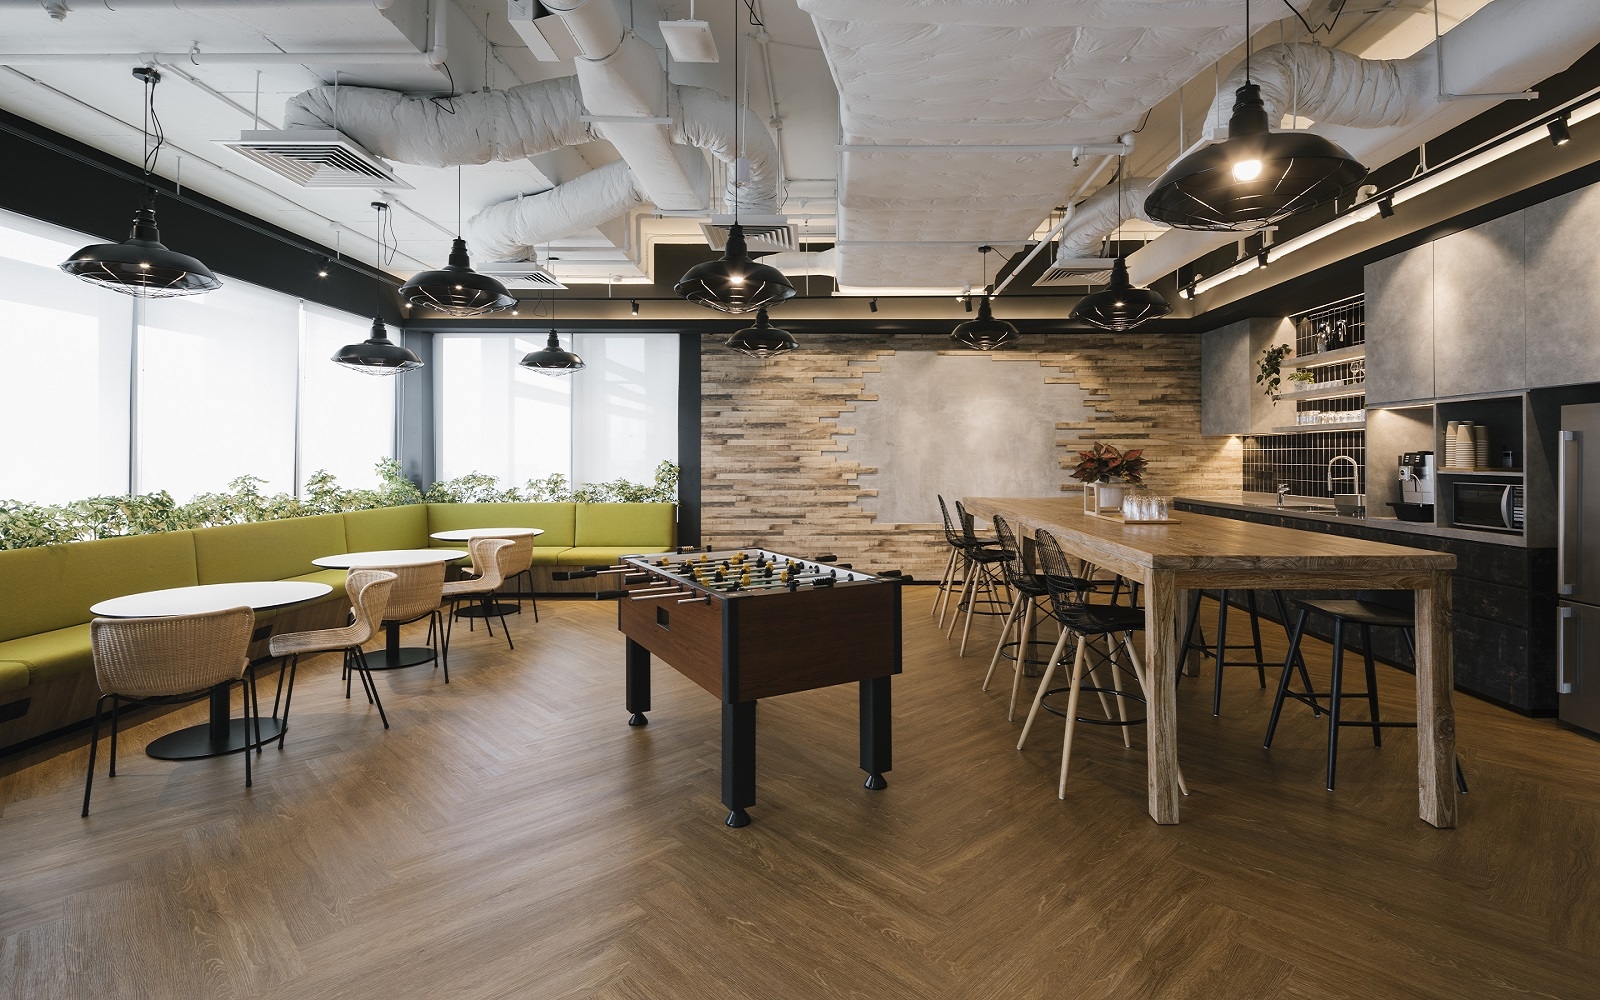 图片[7]|保密投资公司办公室——新加坡|ART-Arrakis | 建筑室内设计的创新与灵感